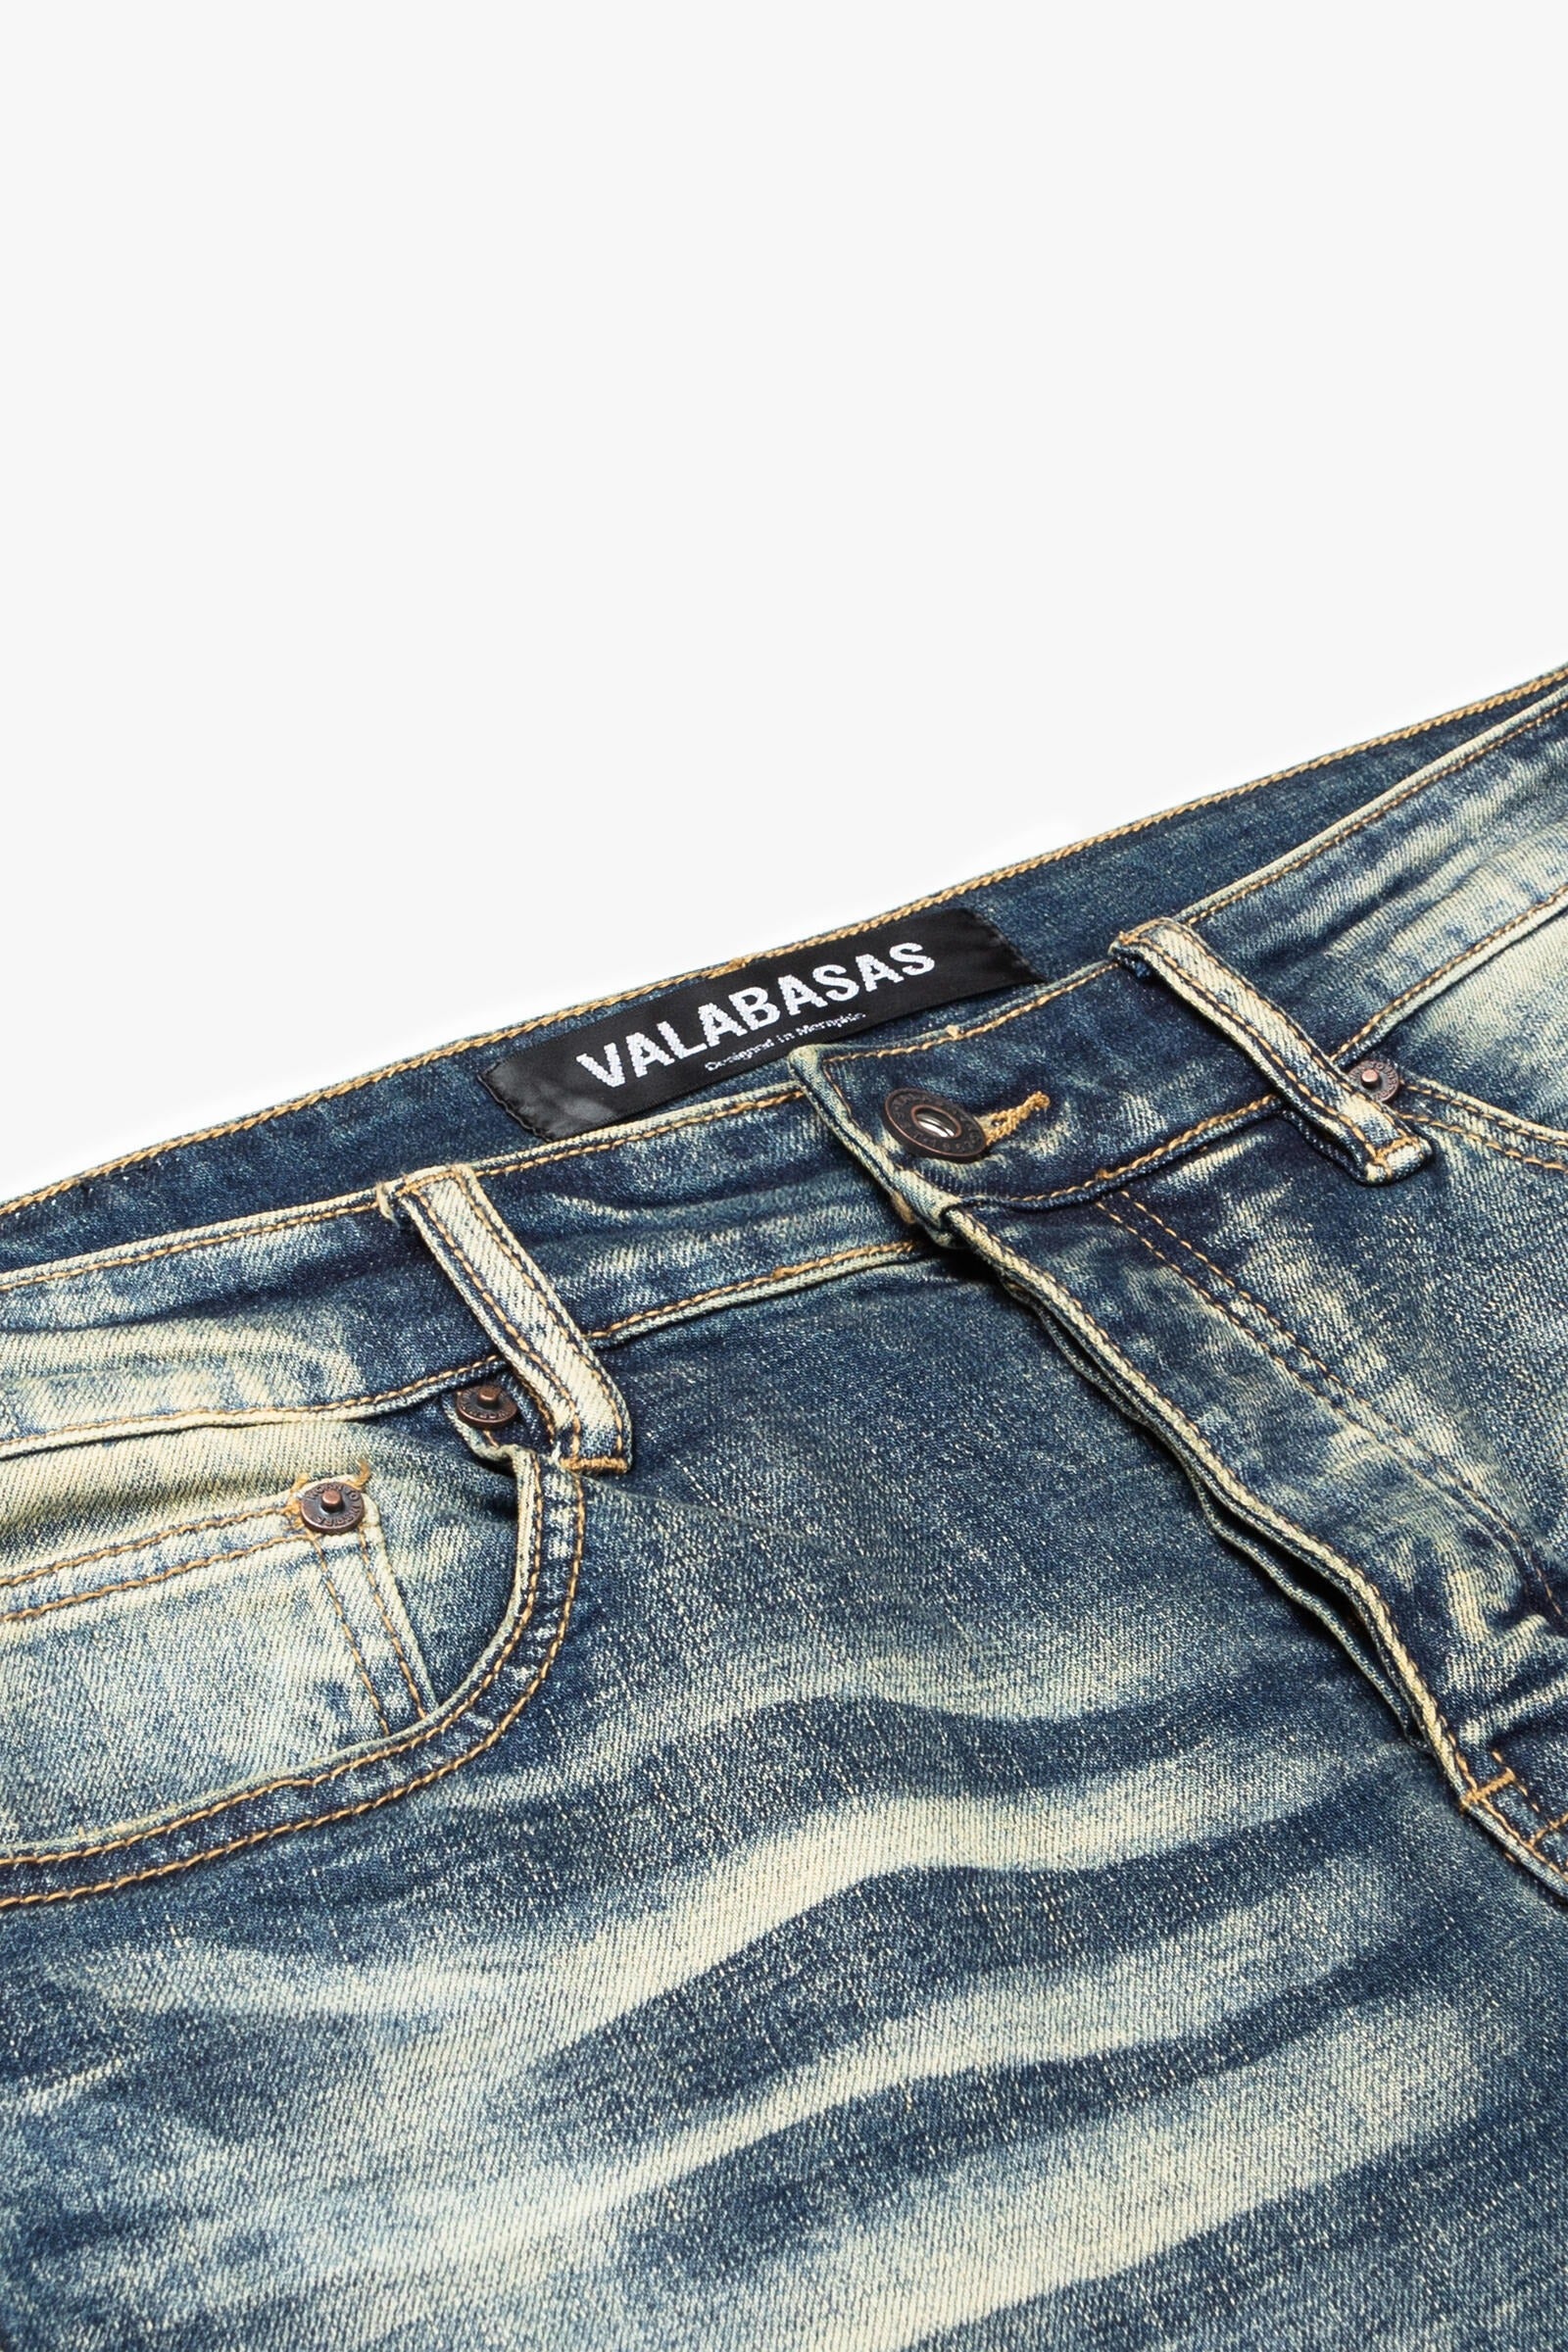 Valabasas Men's Denim Jeans - Mr Extendo Super Stacked